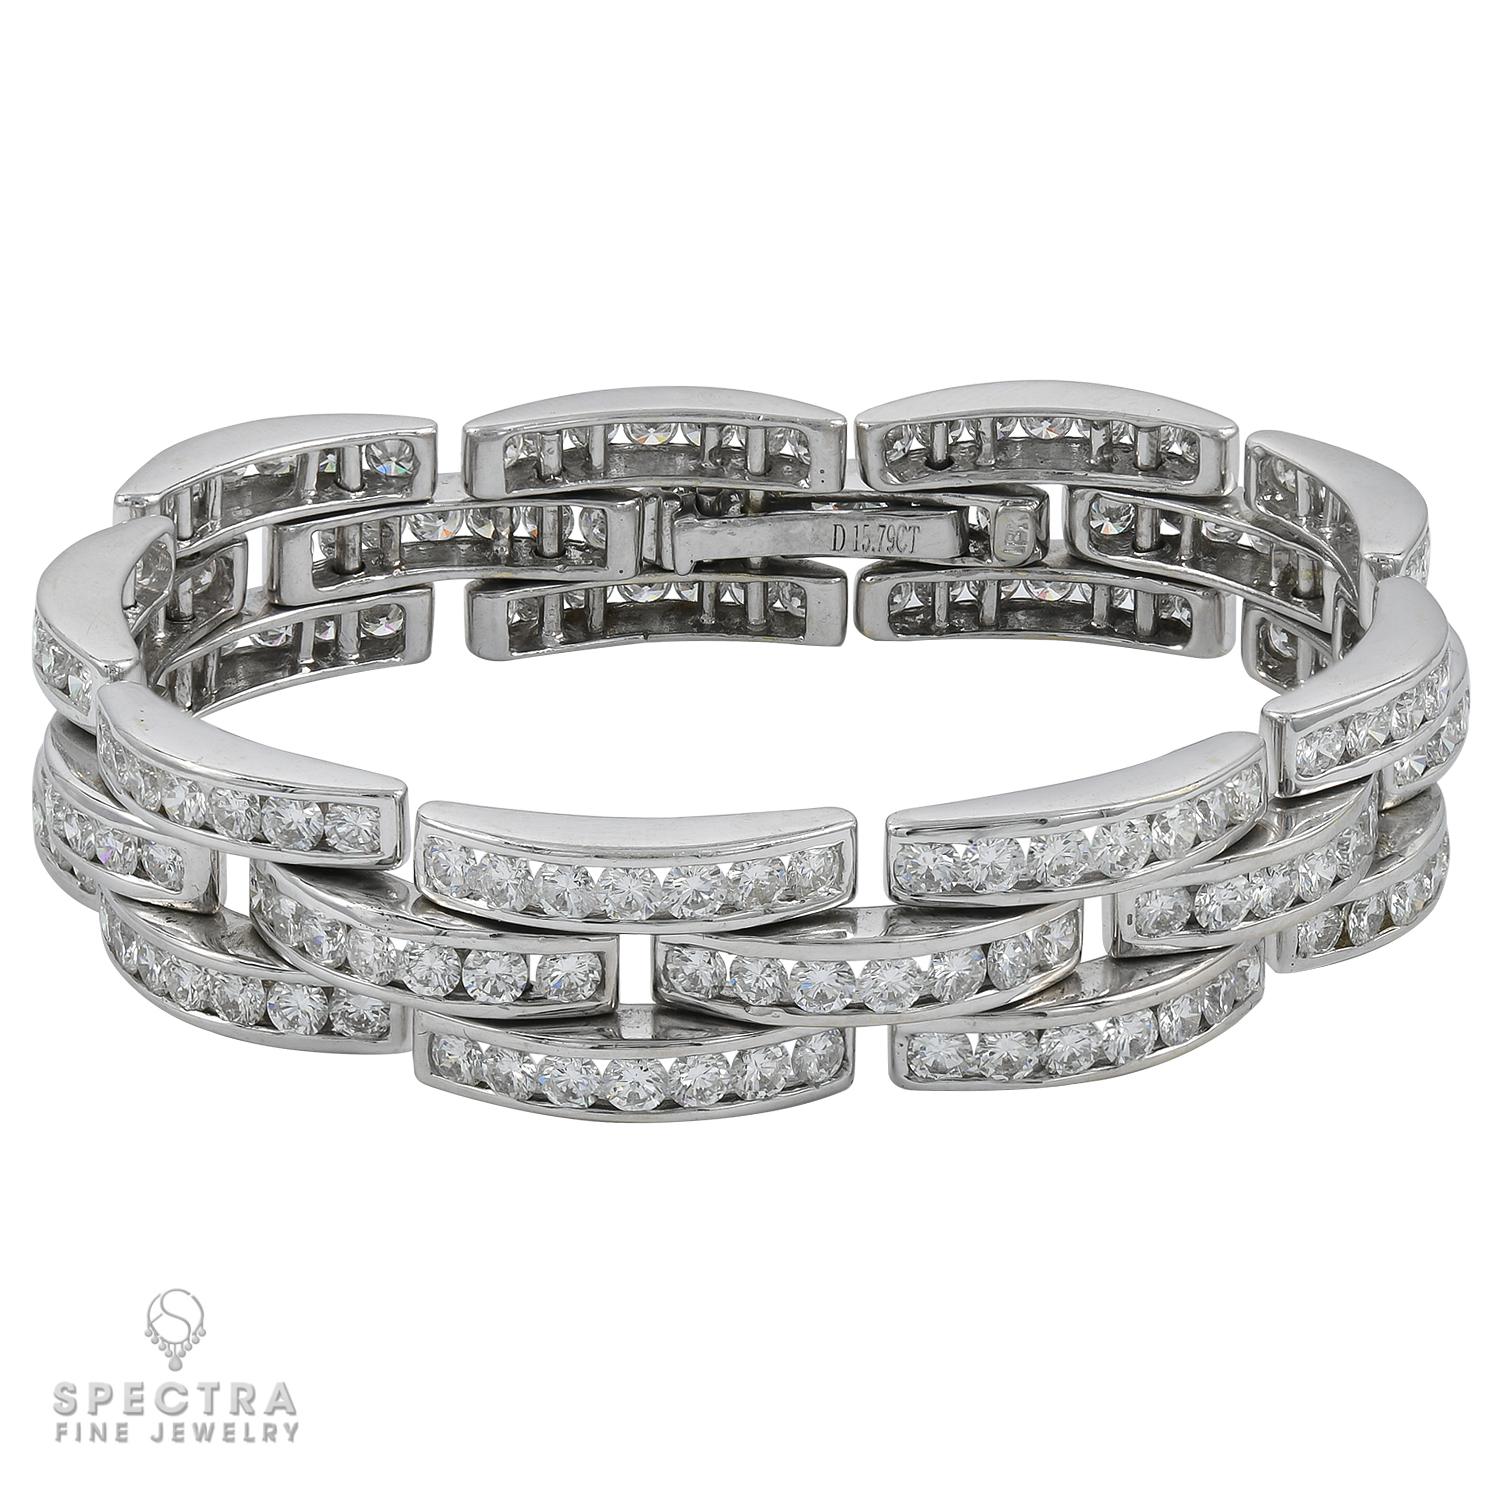 Les amateurs de bijoux Art déco seront captivés par la géométrie exquise de ce bracelet pavé de diamants contemporain. Bien qu'il ait été créé au XXIe siècle, ce somptueux bracelet dégage le charme d'une époque révolue, grâce à un minimalisme épuré